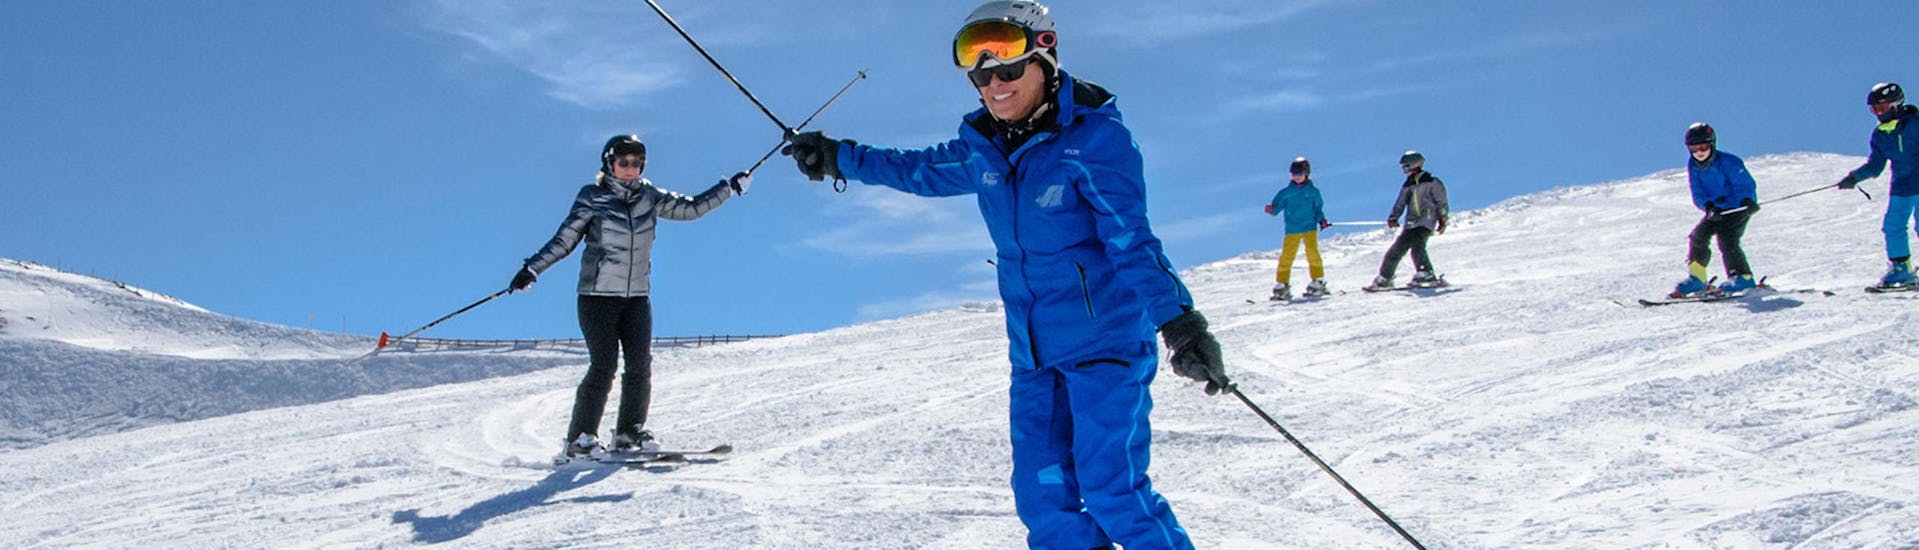 Während des Skikurses für Erwachsene für Anfänger bei der Schneesportschule Wildkogel zeigt ein Skilehrer der Gruppe, wie man Kurven fährt und das Gleichgewicht auf den Skiern hält.